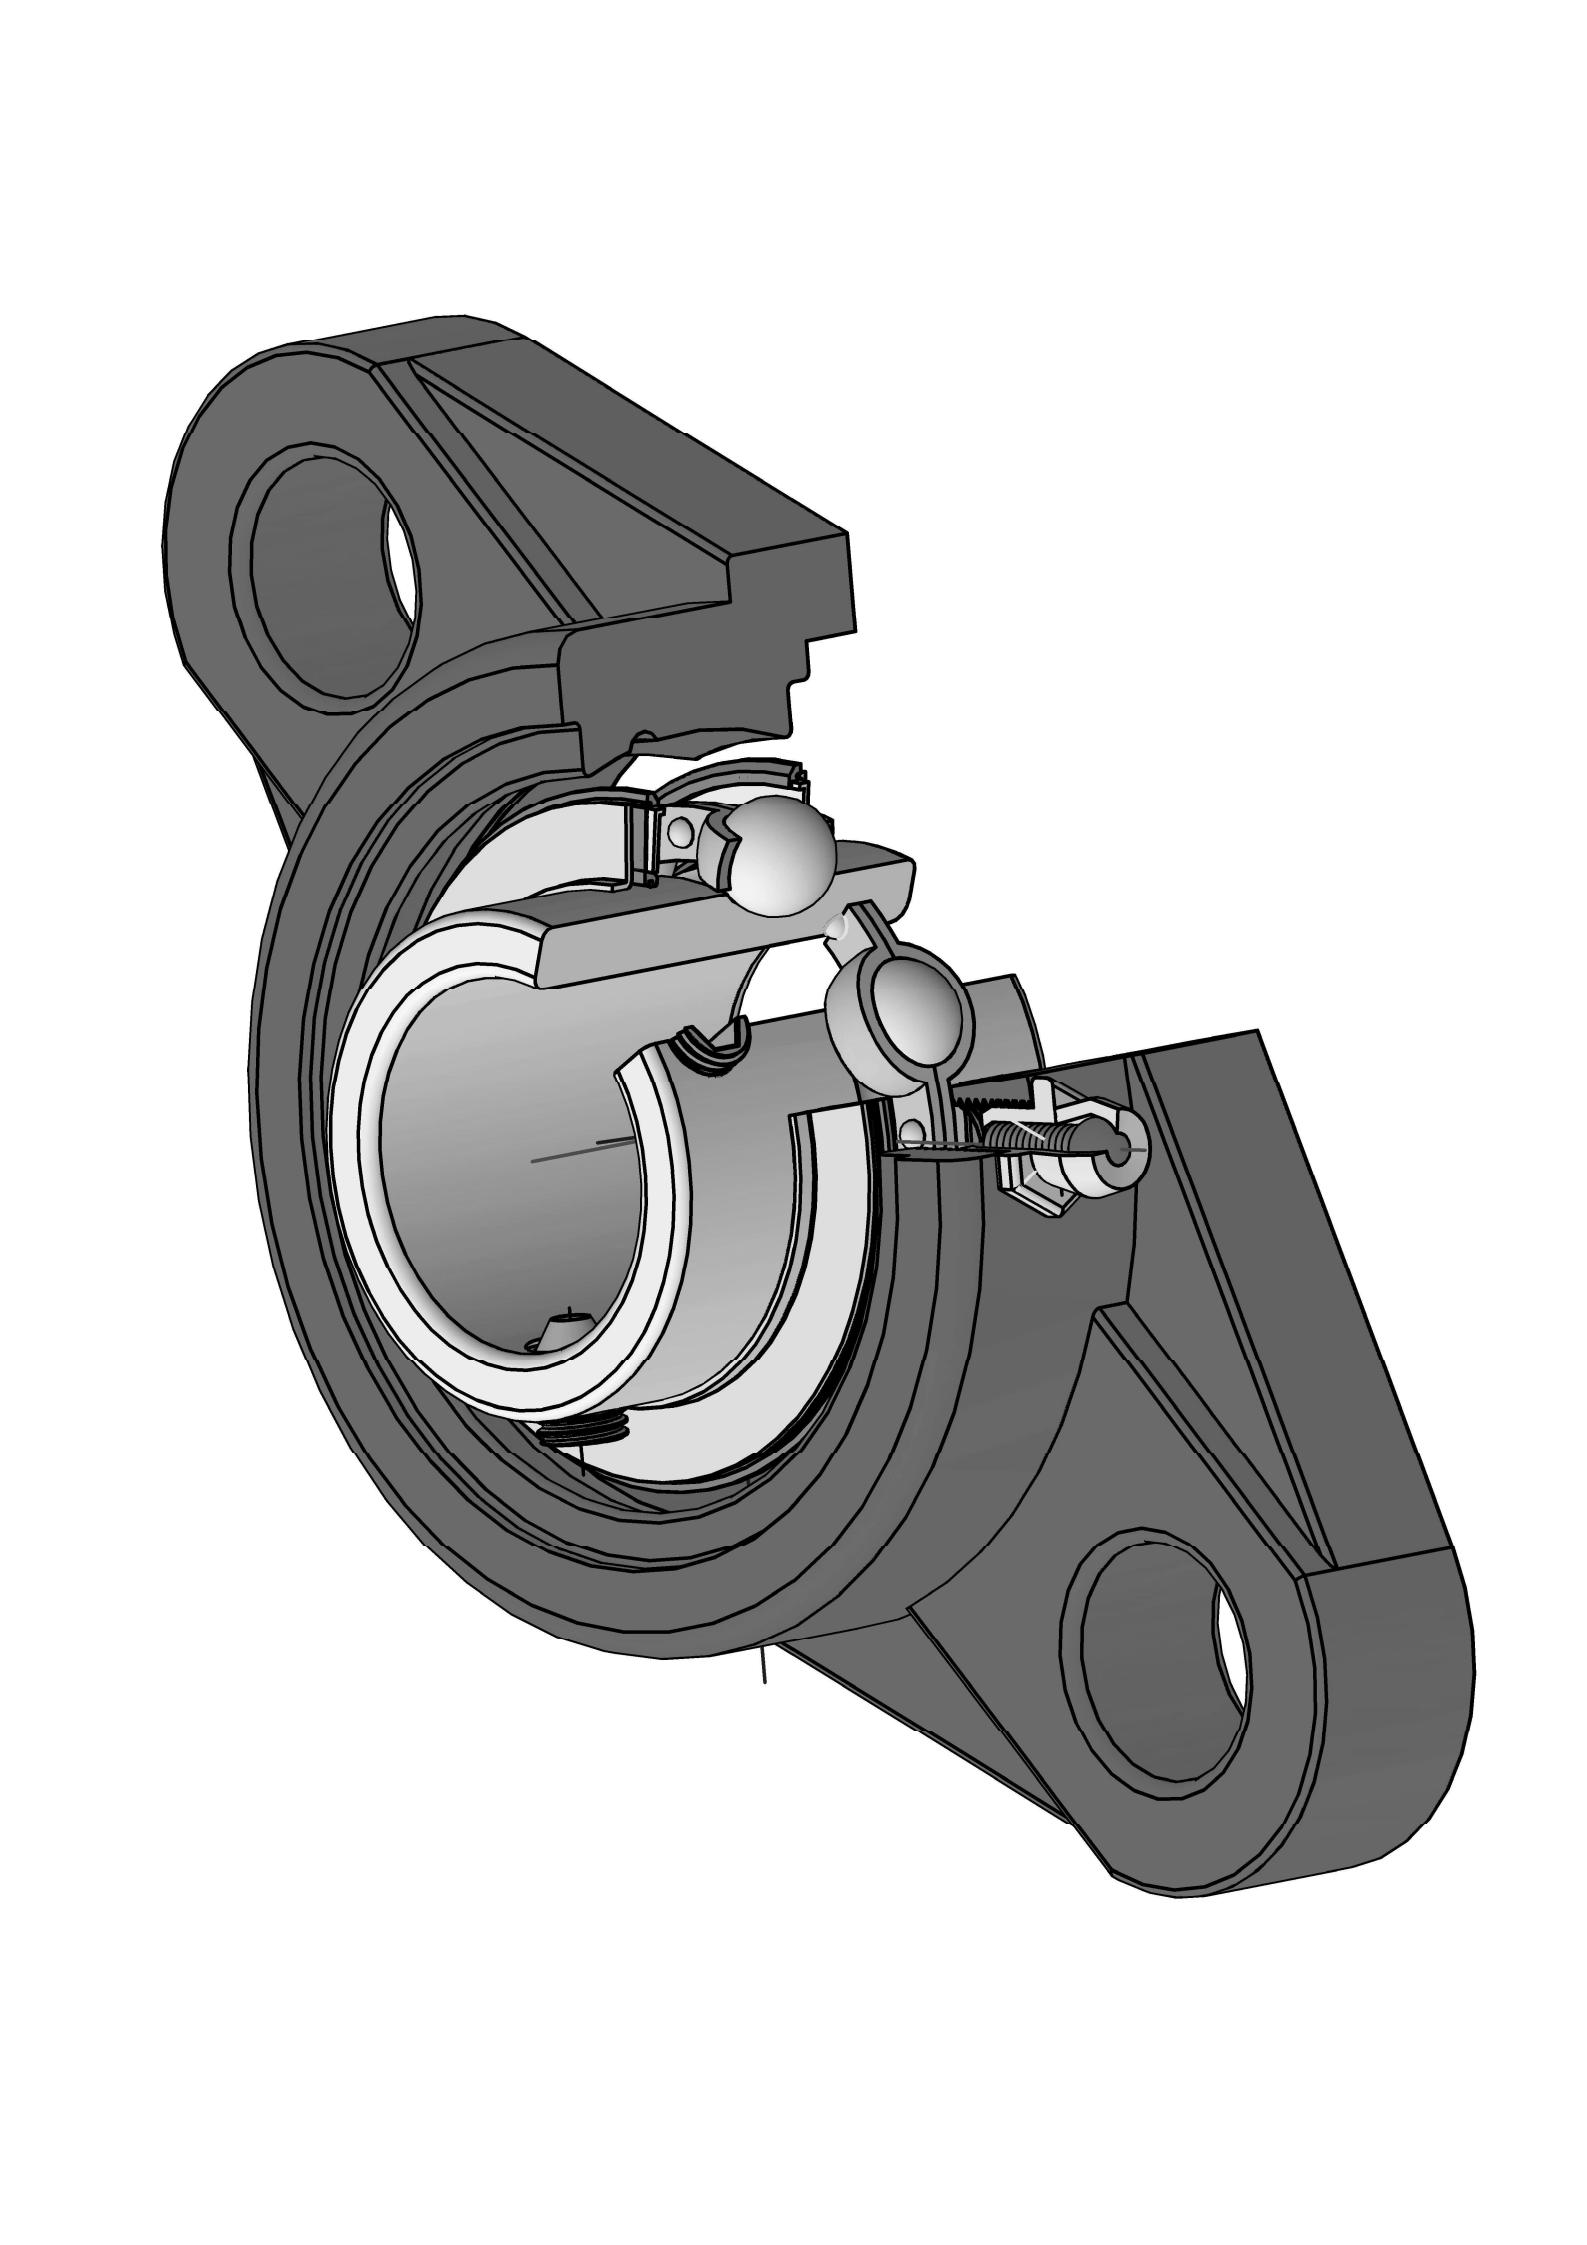 UCFT206 Ova ovalna prirubnička ležajna jedinica sa dva vijka sa provrtom od 30 mm